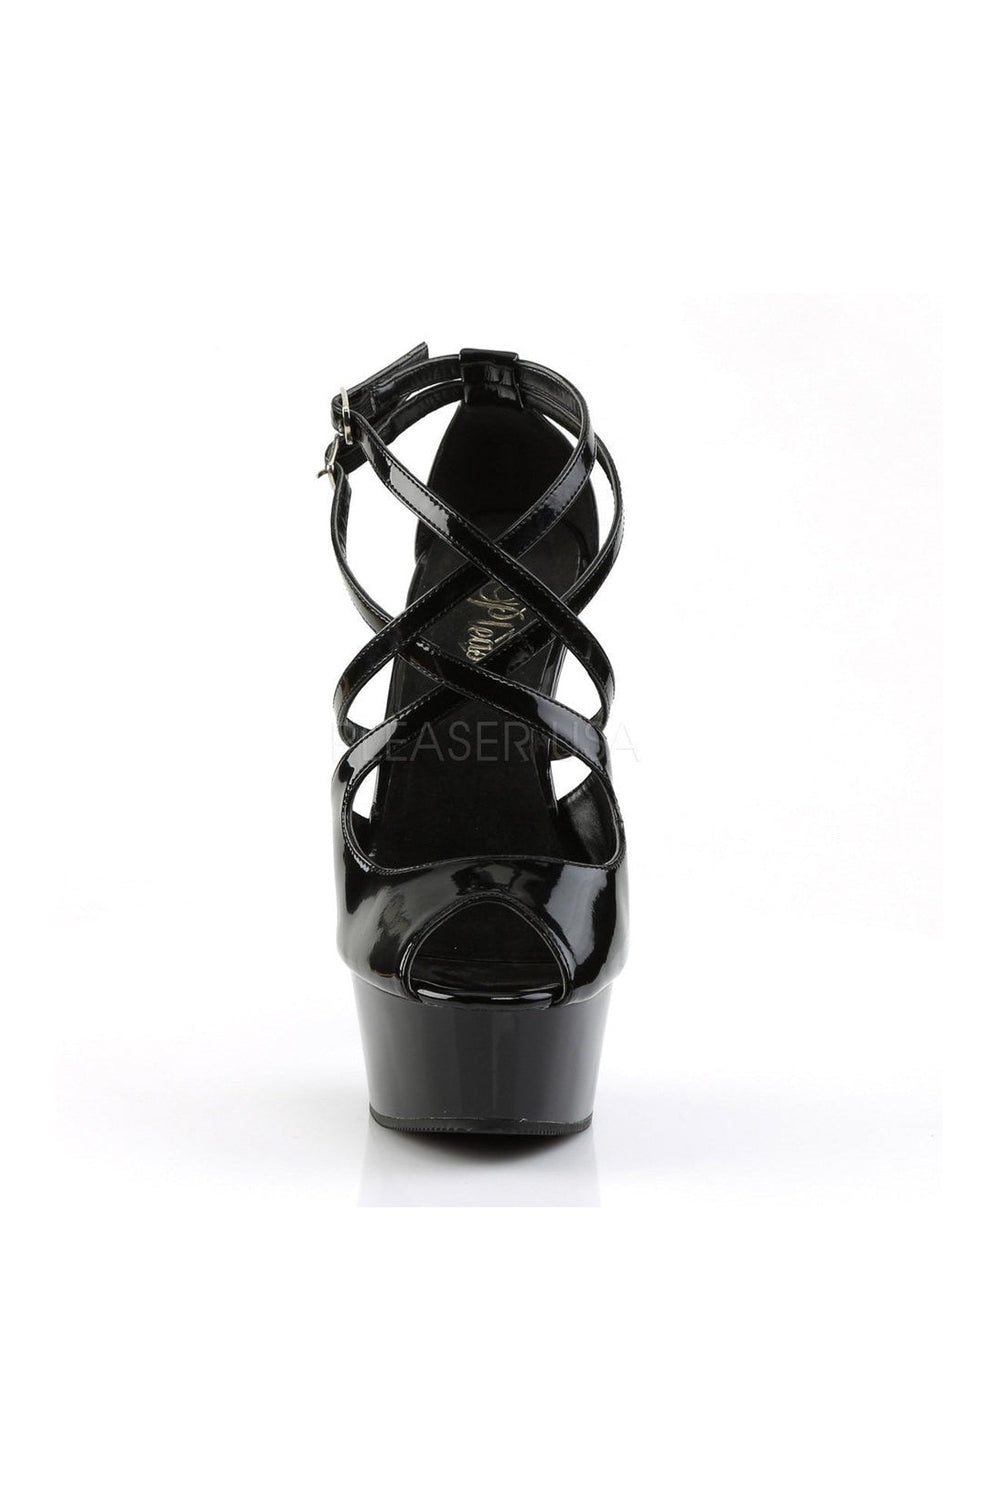 DELIGHT-612 Platform Sandal | Black Patent-Pleaser-Sandals-SEXYSHOES.COM